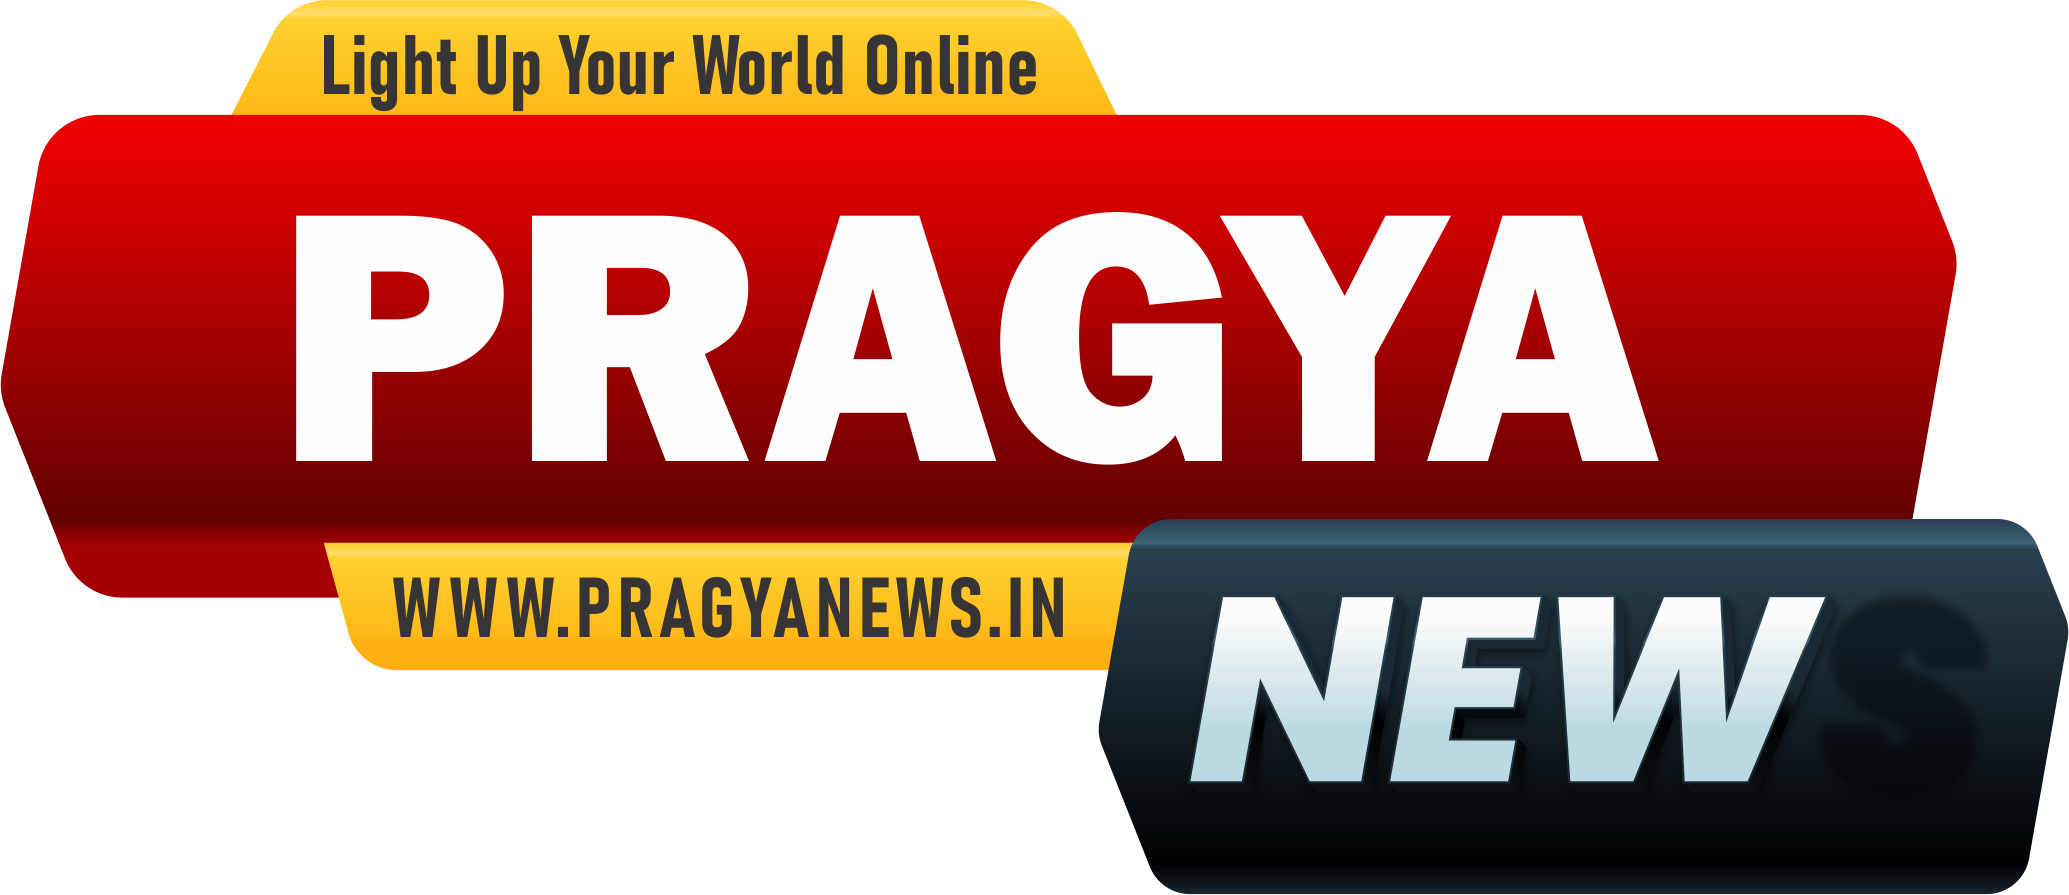 Pragya News